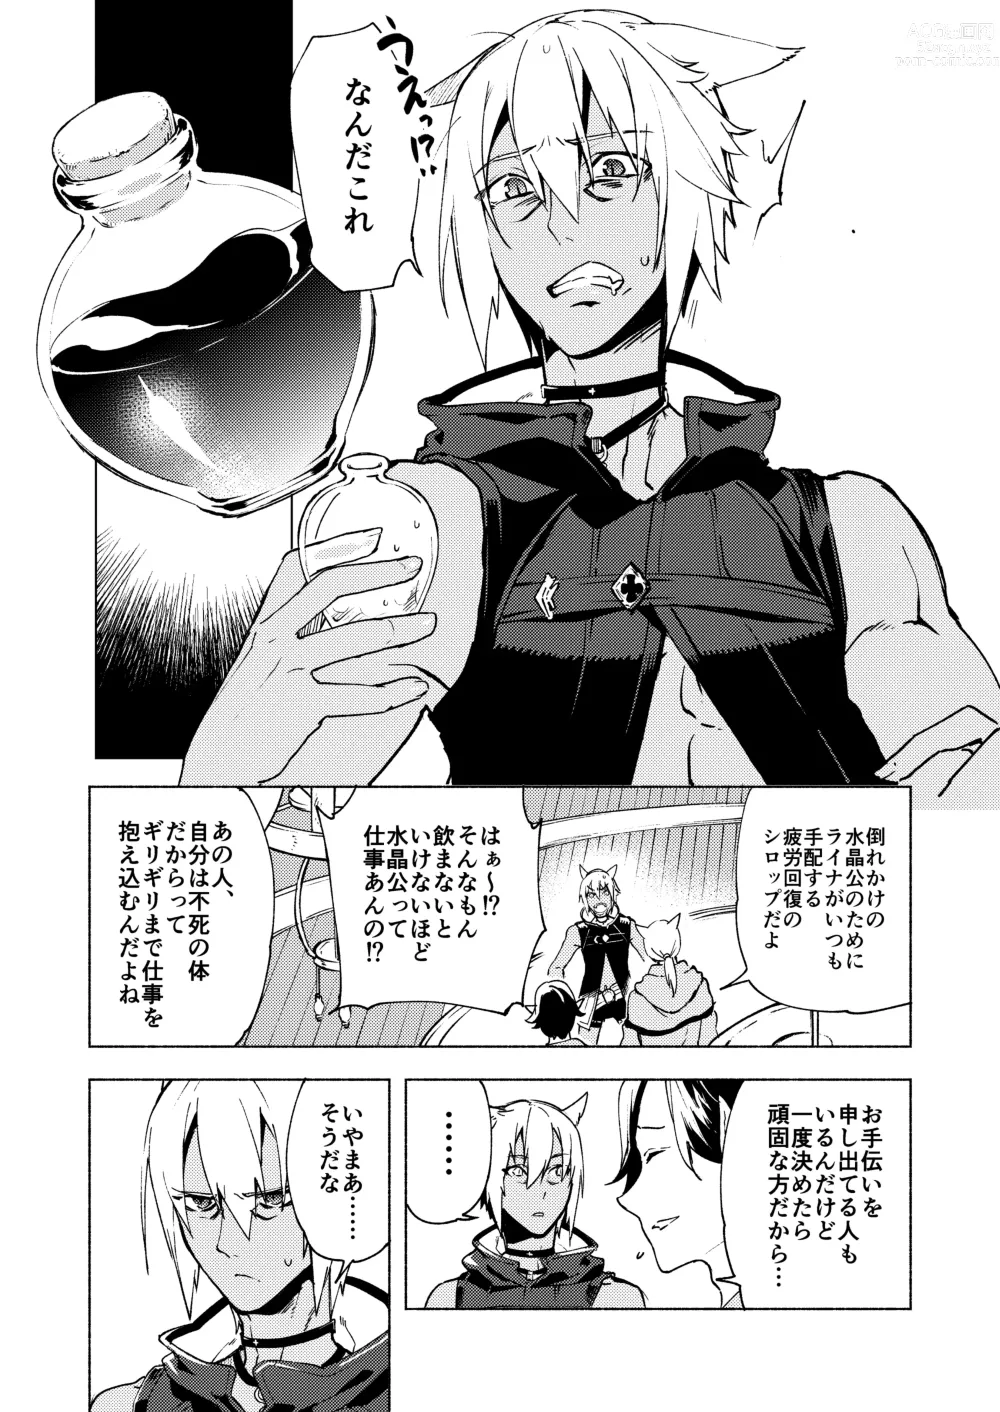 Page 5 of doujinshi Koi no Uta, Ai no Uta.